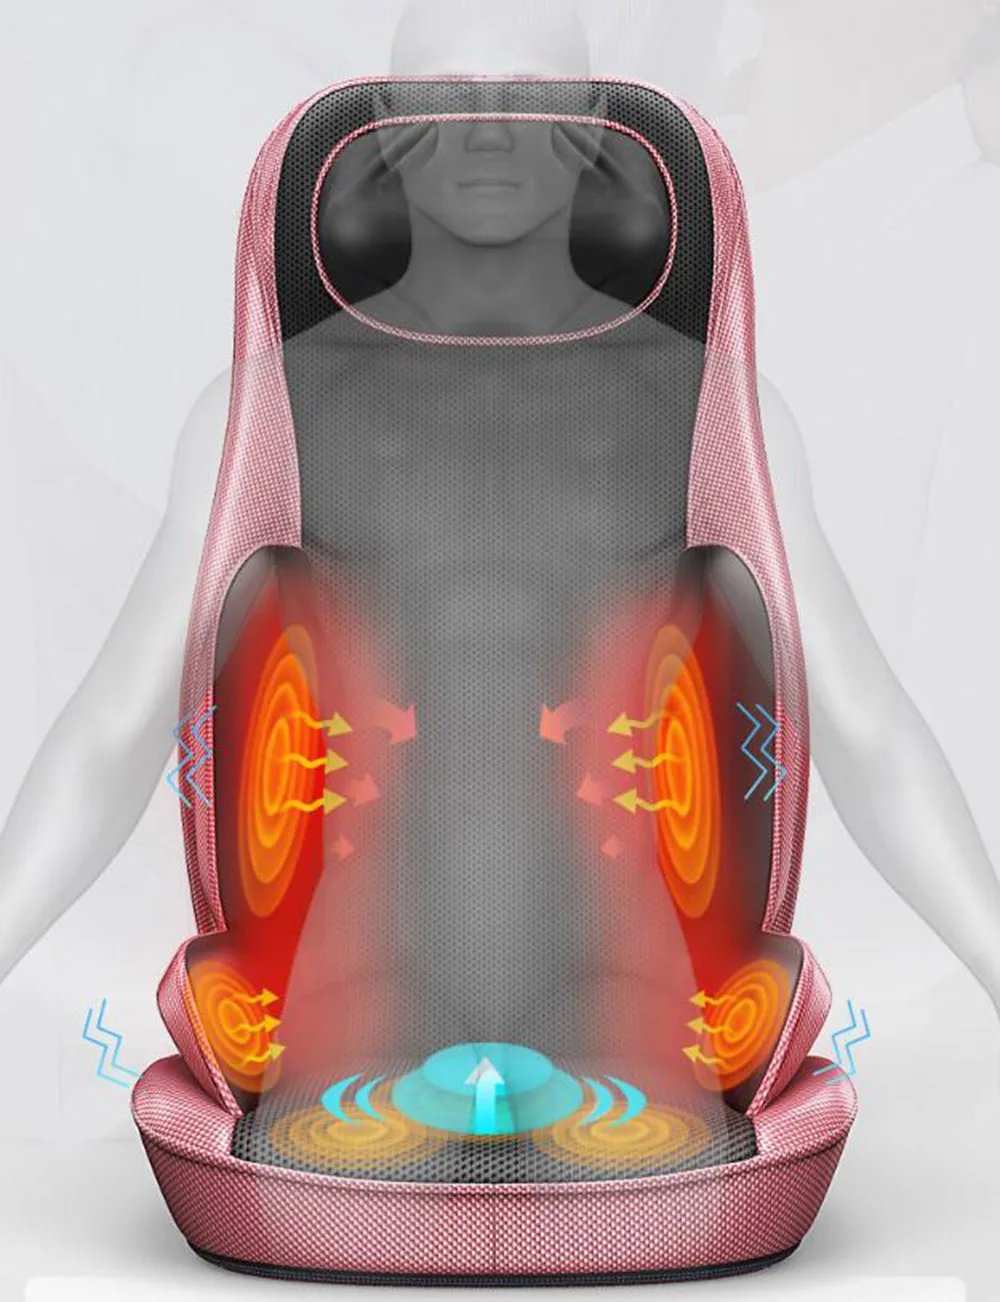 Домашний стул для массажа плеча шеи массажер Многофункциональный шеи плеча талии вибрации тела Электрический разминающий стул подушка